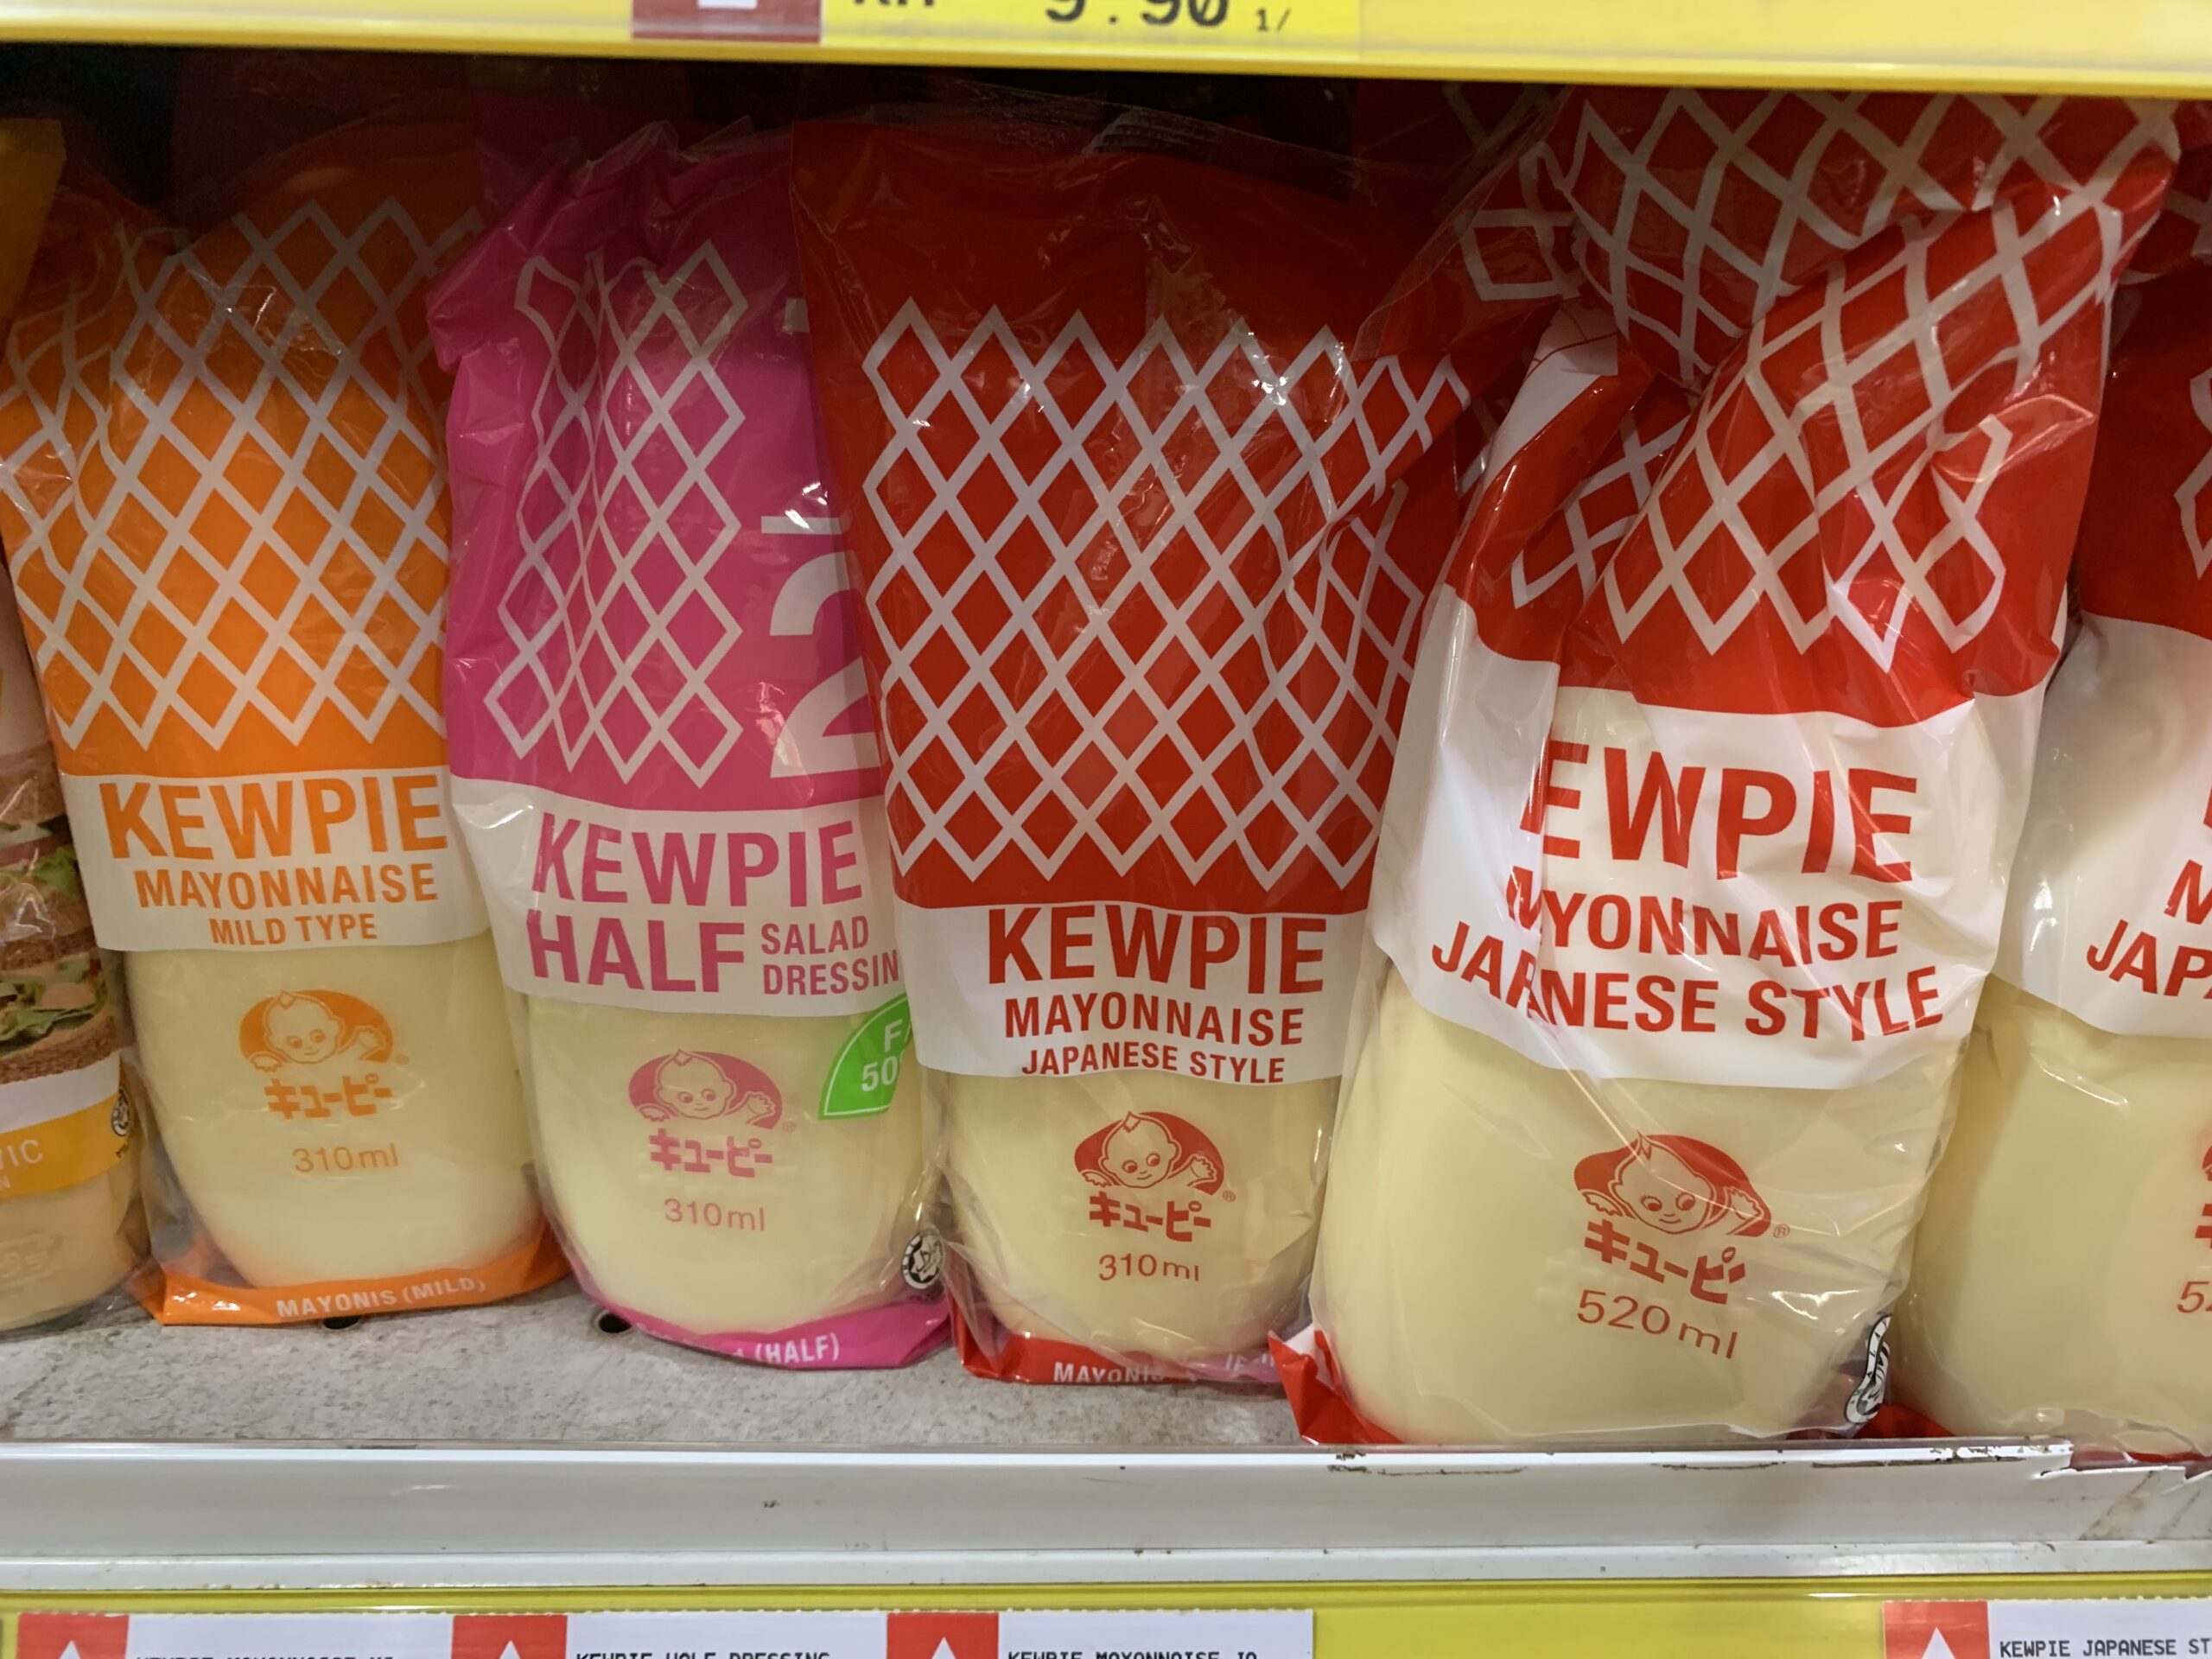 Japanese Mayonnaise Sauce: The Kewpie Brand